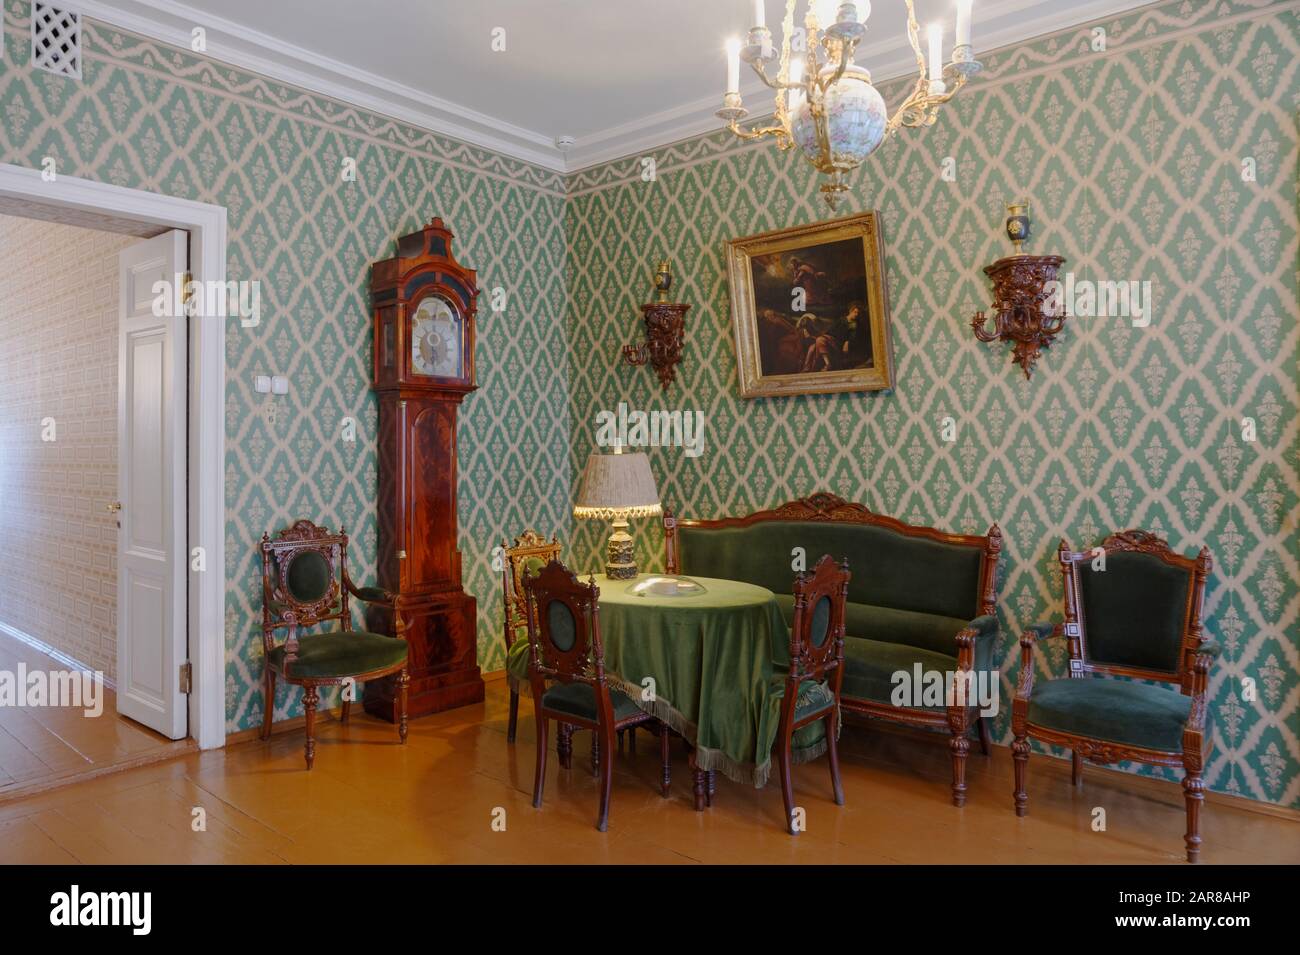 Sankt Petersburg, Russland - 19. Juni 2019: Inneneinrichtung des Wohnzimmers in der Gedenkwohnung des berühmten russischen Autors Fjodor Dostojewski. Er lebte von 1878 bis zu seinen Toten im Jahr 1881 in dieser Wohnung Stockfoto